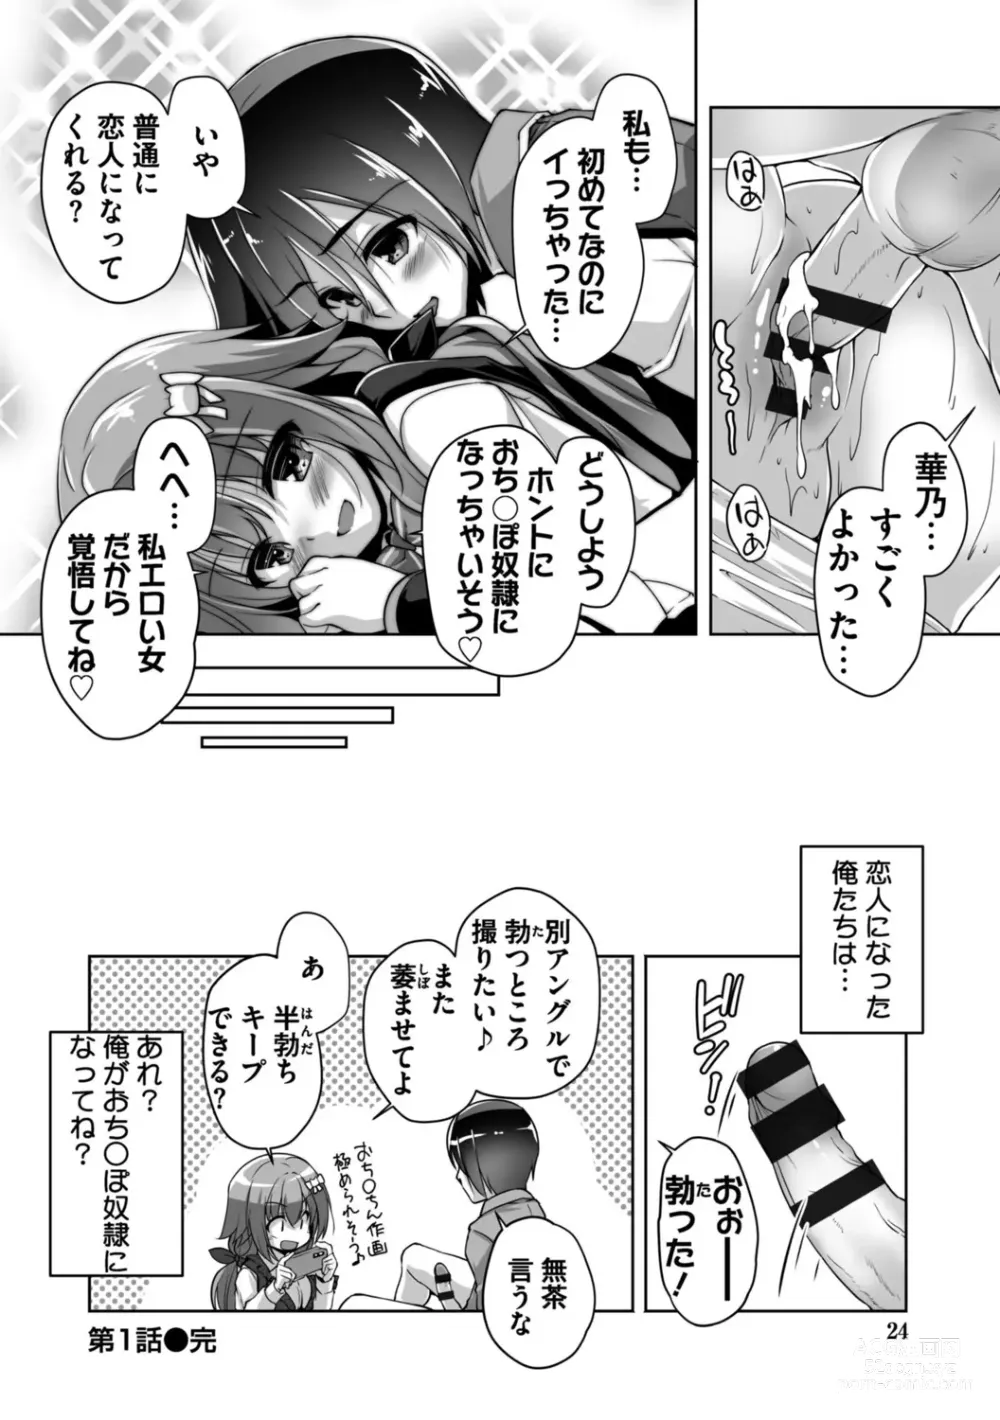 Page 24 of manga Hamidashi Creative Adult Edition